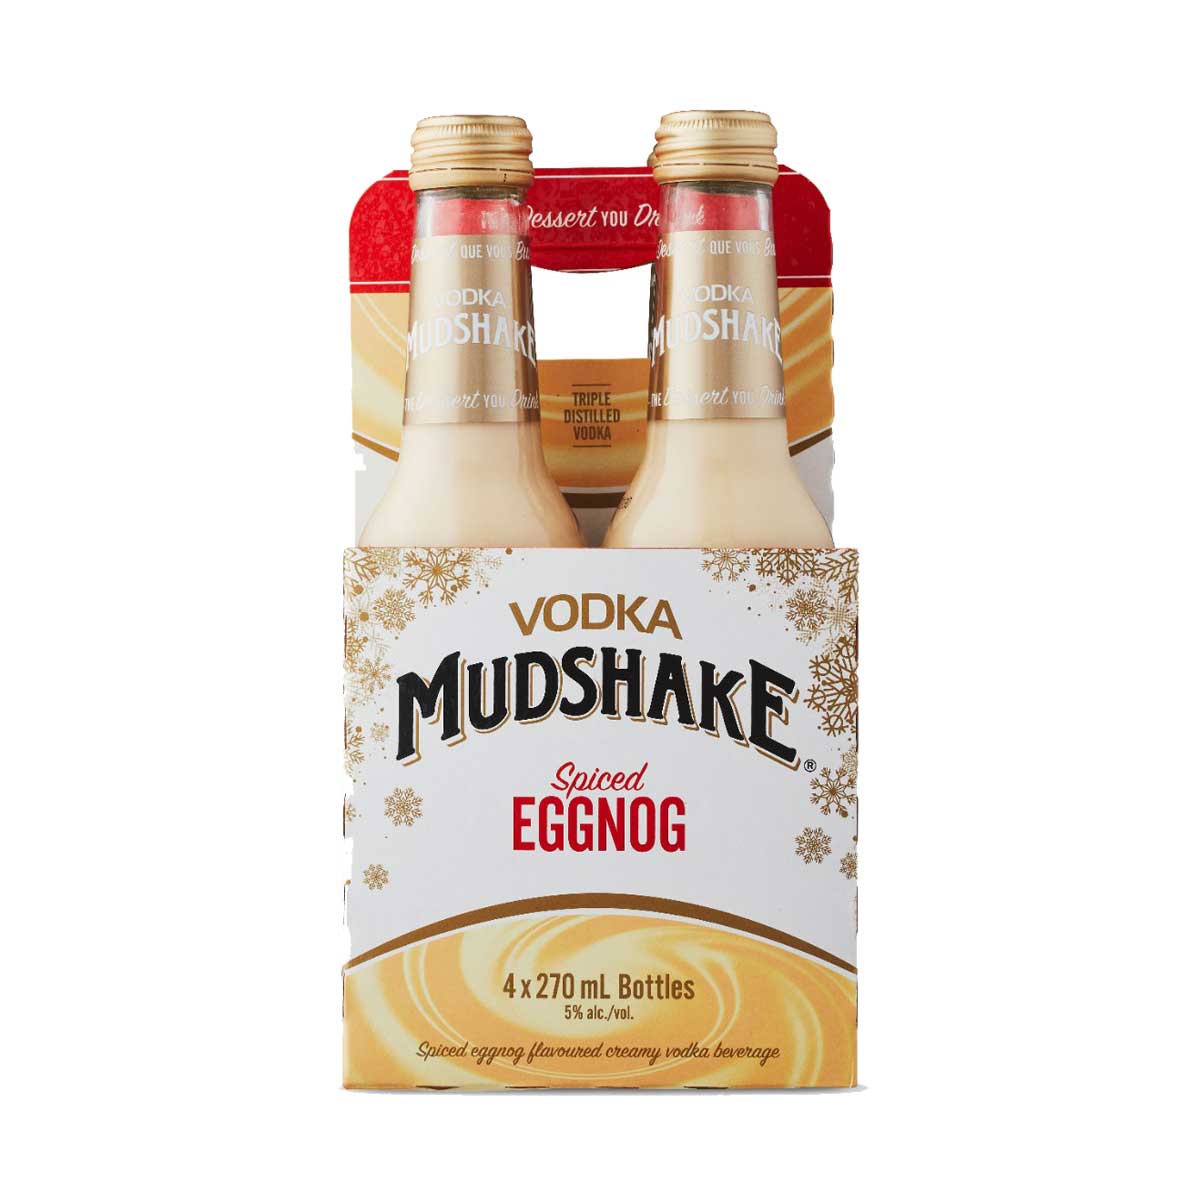 TAG Liquor Stores Canada Delivery-Spiced Eggnog Vodka Mudshake 4 Pack Bottles-spirits-tagliquorstores.com